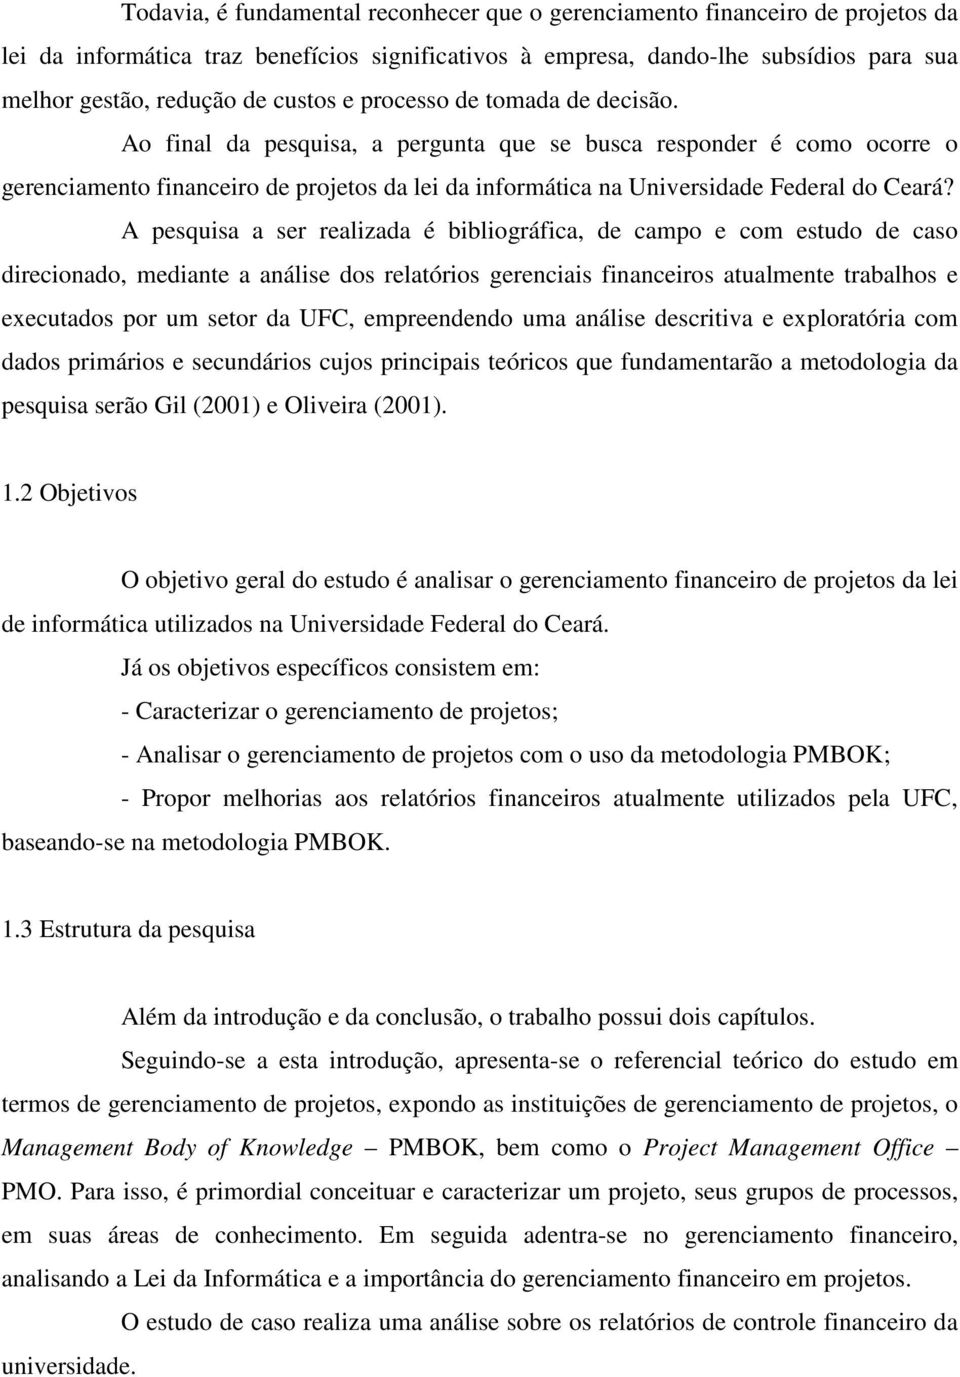 Ao final da pesquisa, a pergunta que se busca responder é como ocorre o gerenciamento financeiro de projetos da lei da informática na Universidade Federal do Ceará?